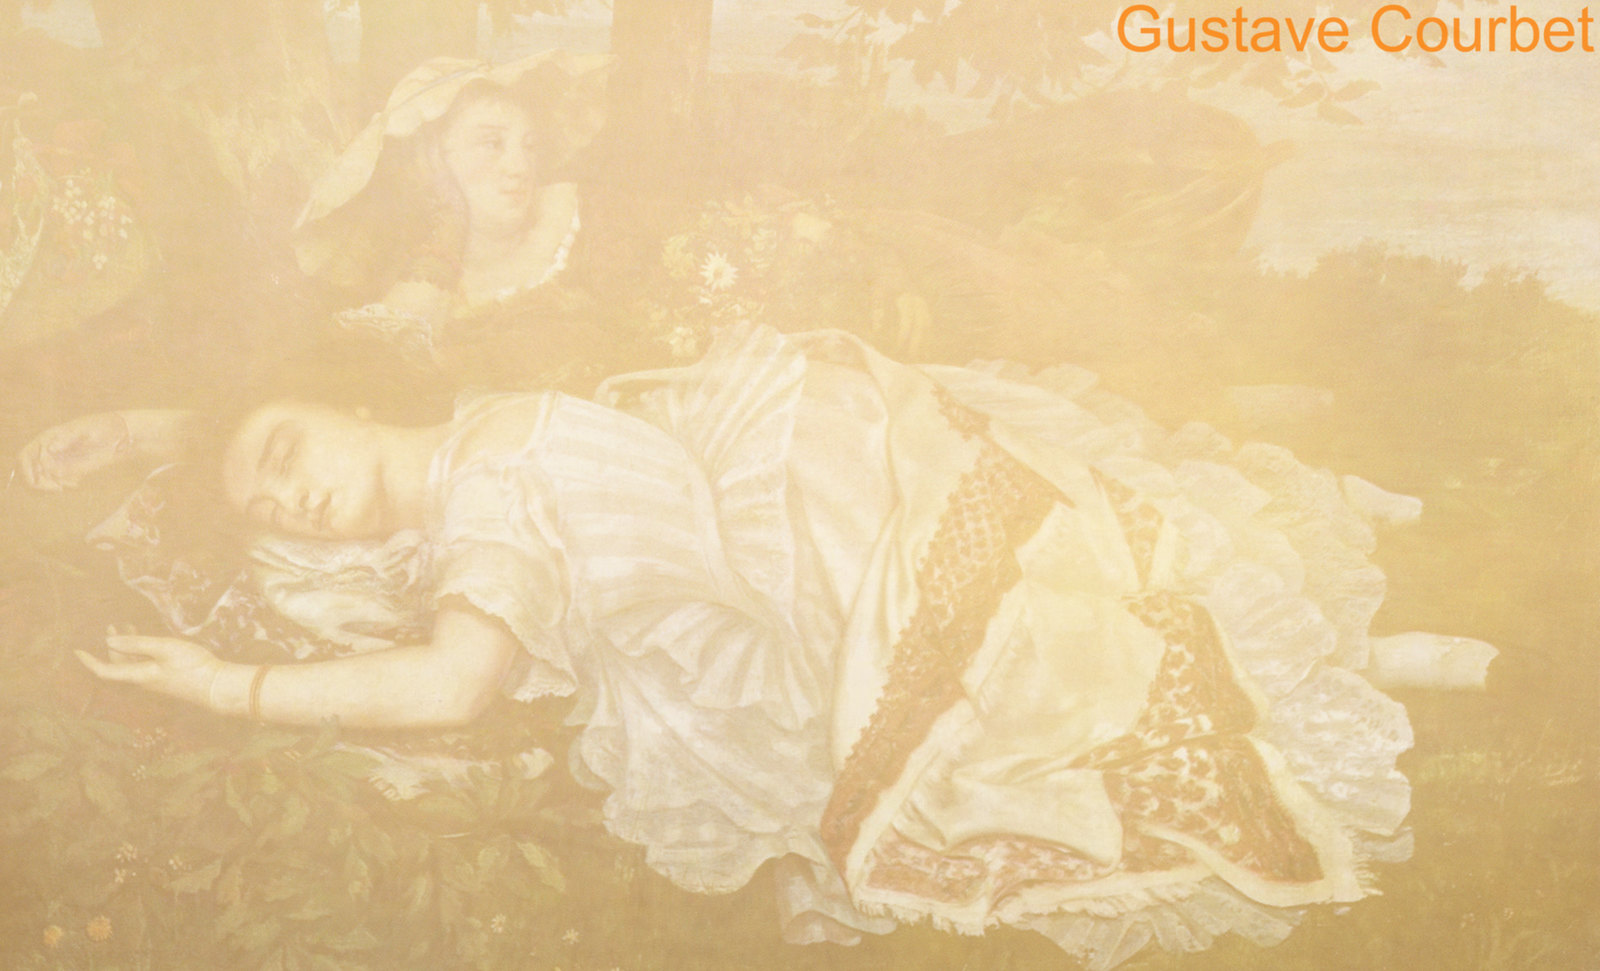 Bondades del Verano, narración de Gustave Courbet (1856), remembranza de Pablo Picasso (1950).